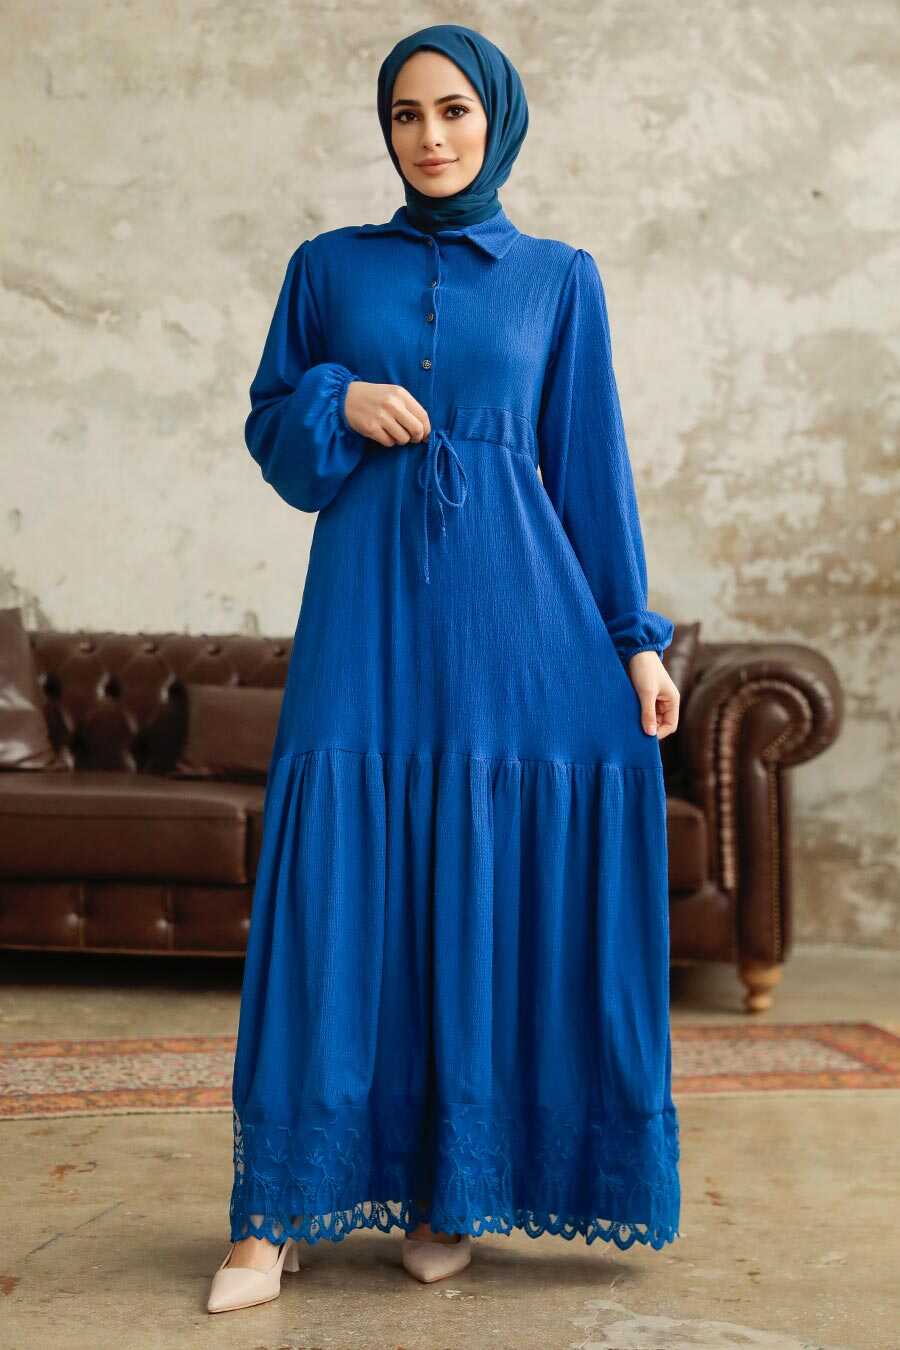  İndigo Blue High Quality Dress 5878IM